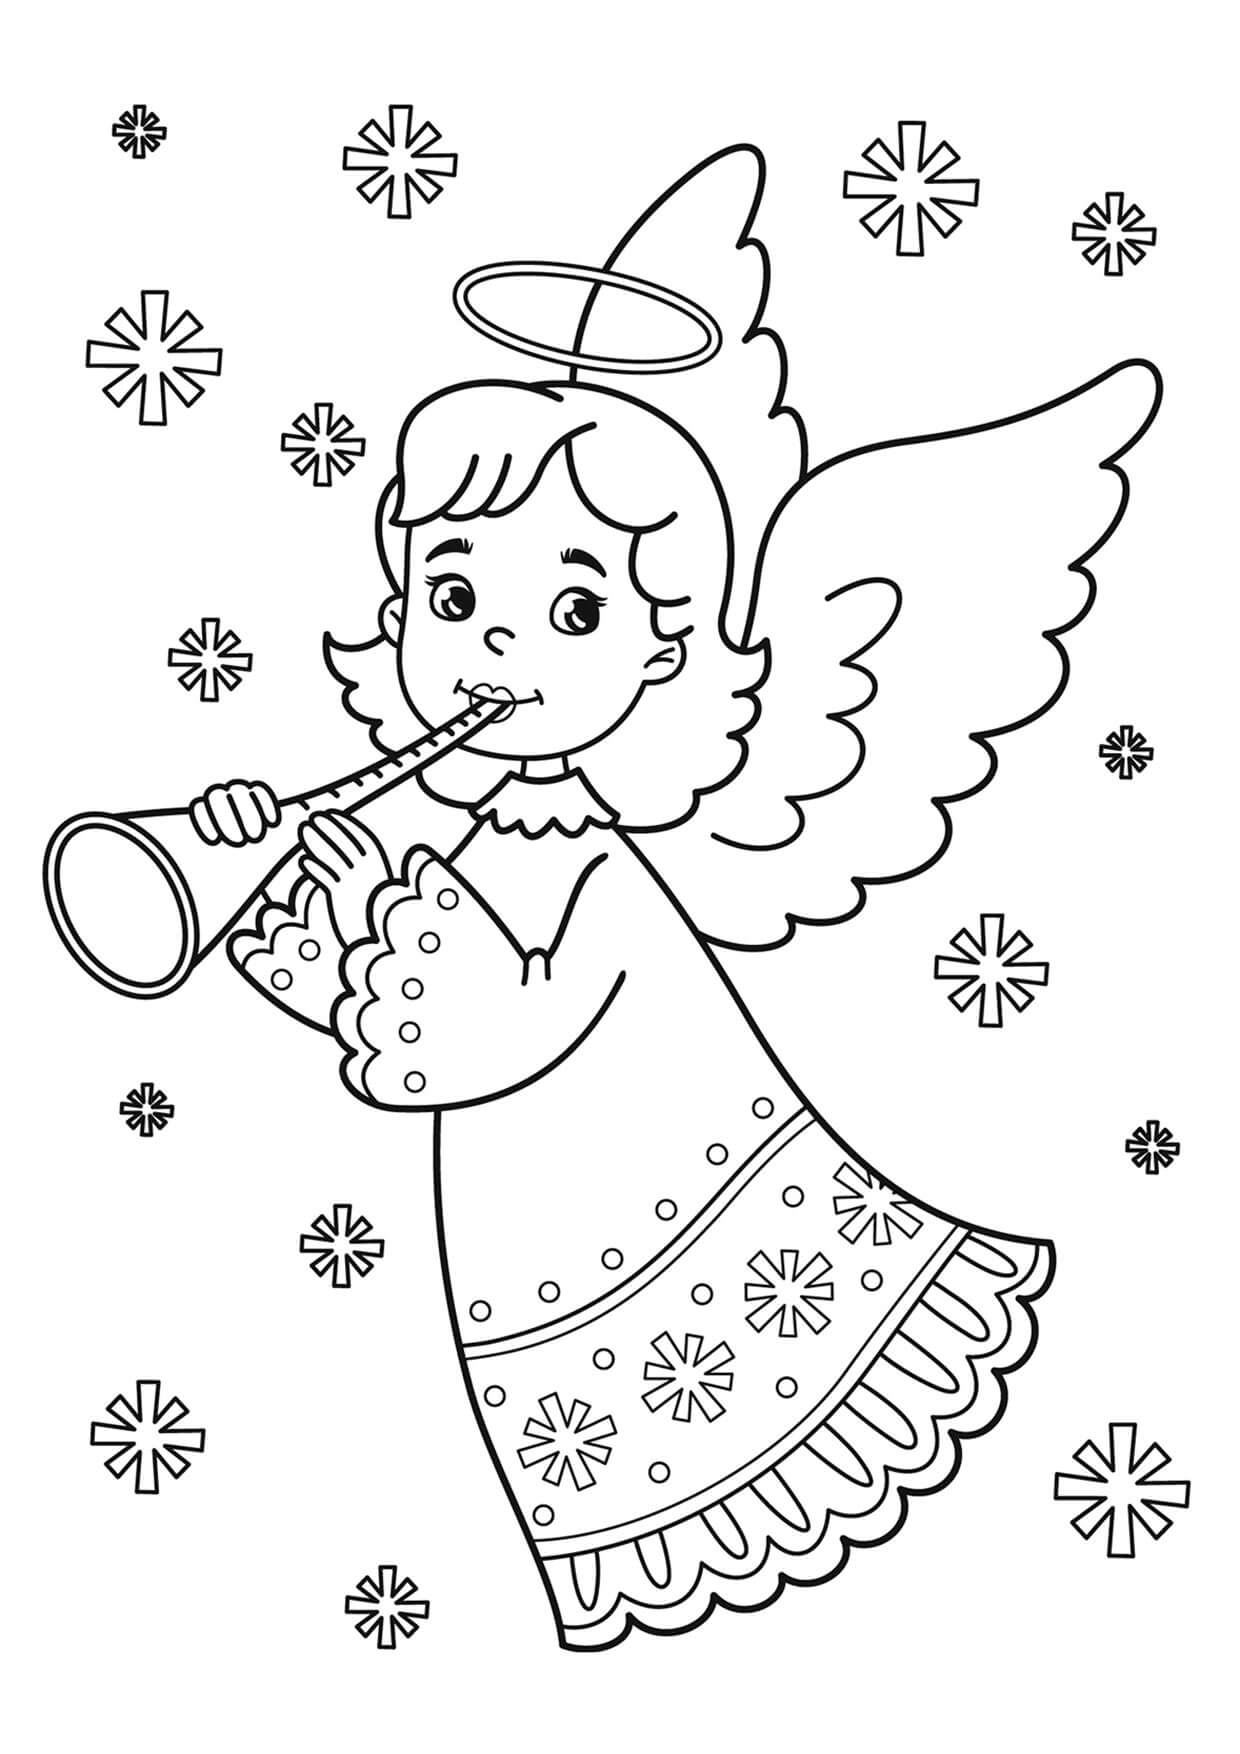 Engel Som Spiller Fløyte fargelegging